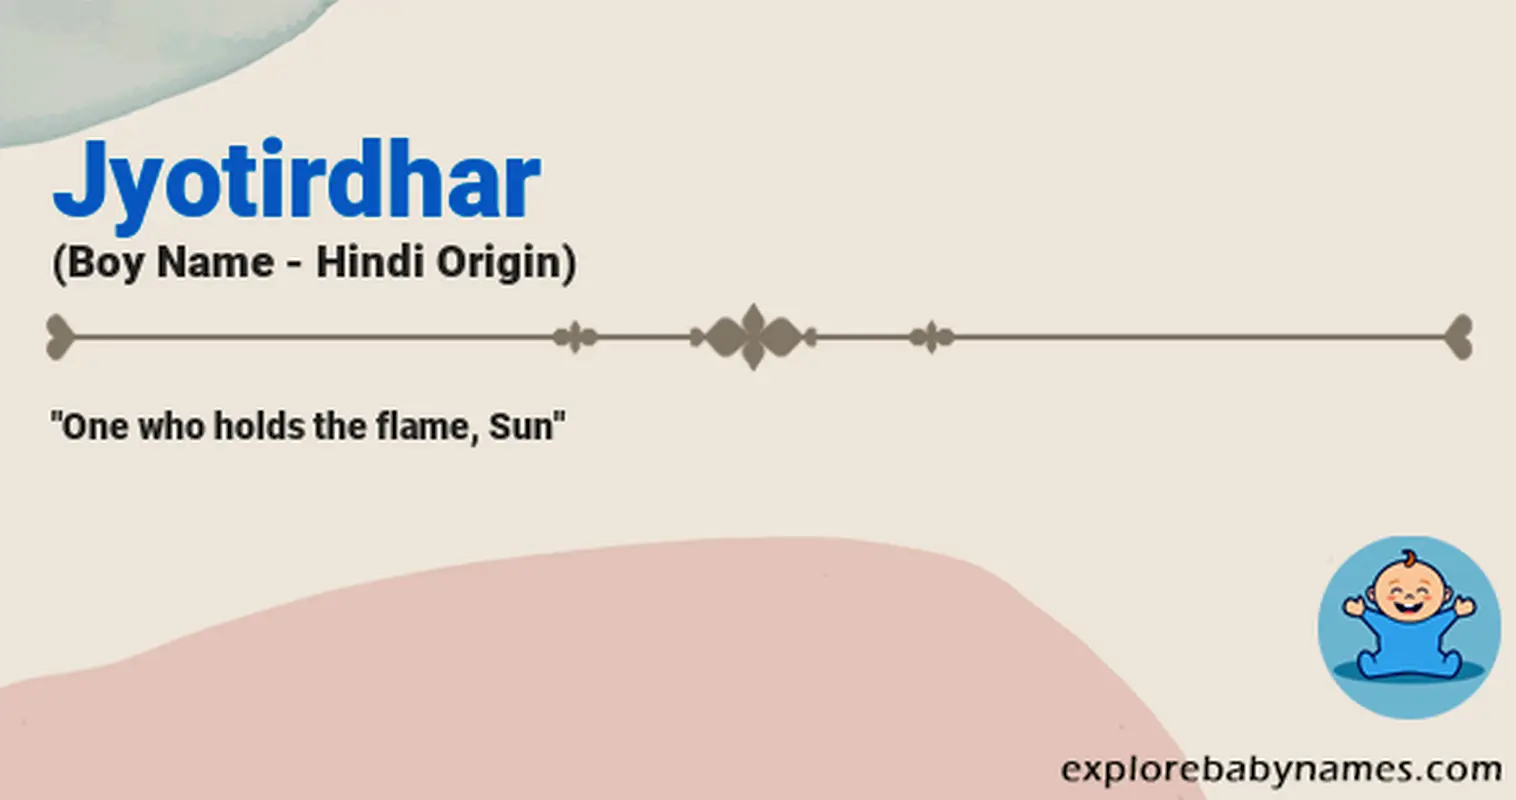 Meaning of Jyotirdhar